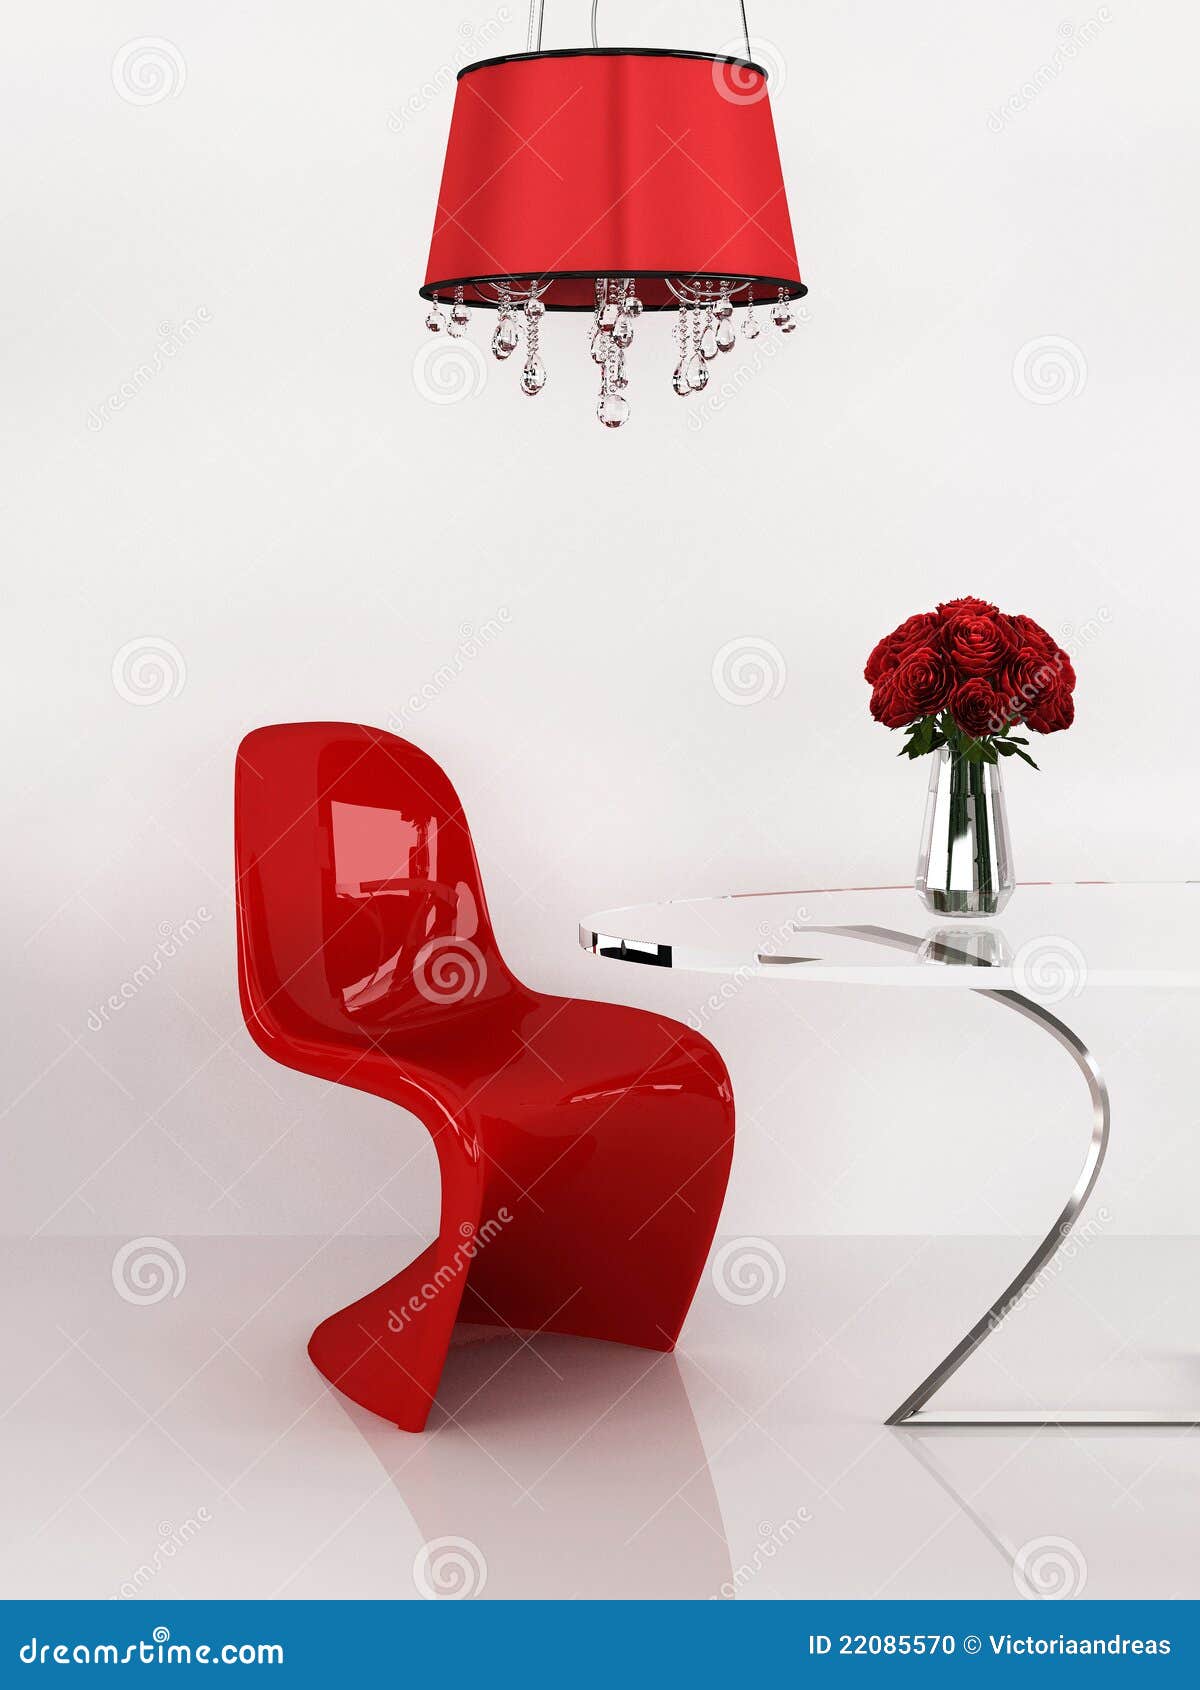 modern chair in minimalism interior. furniture